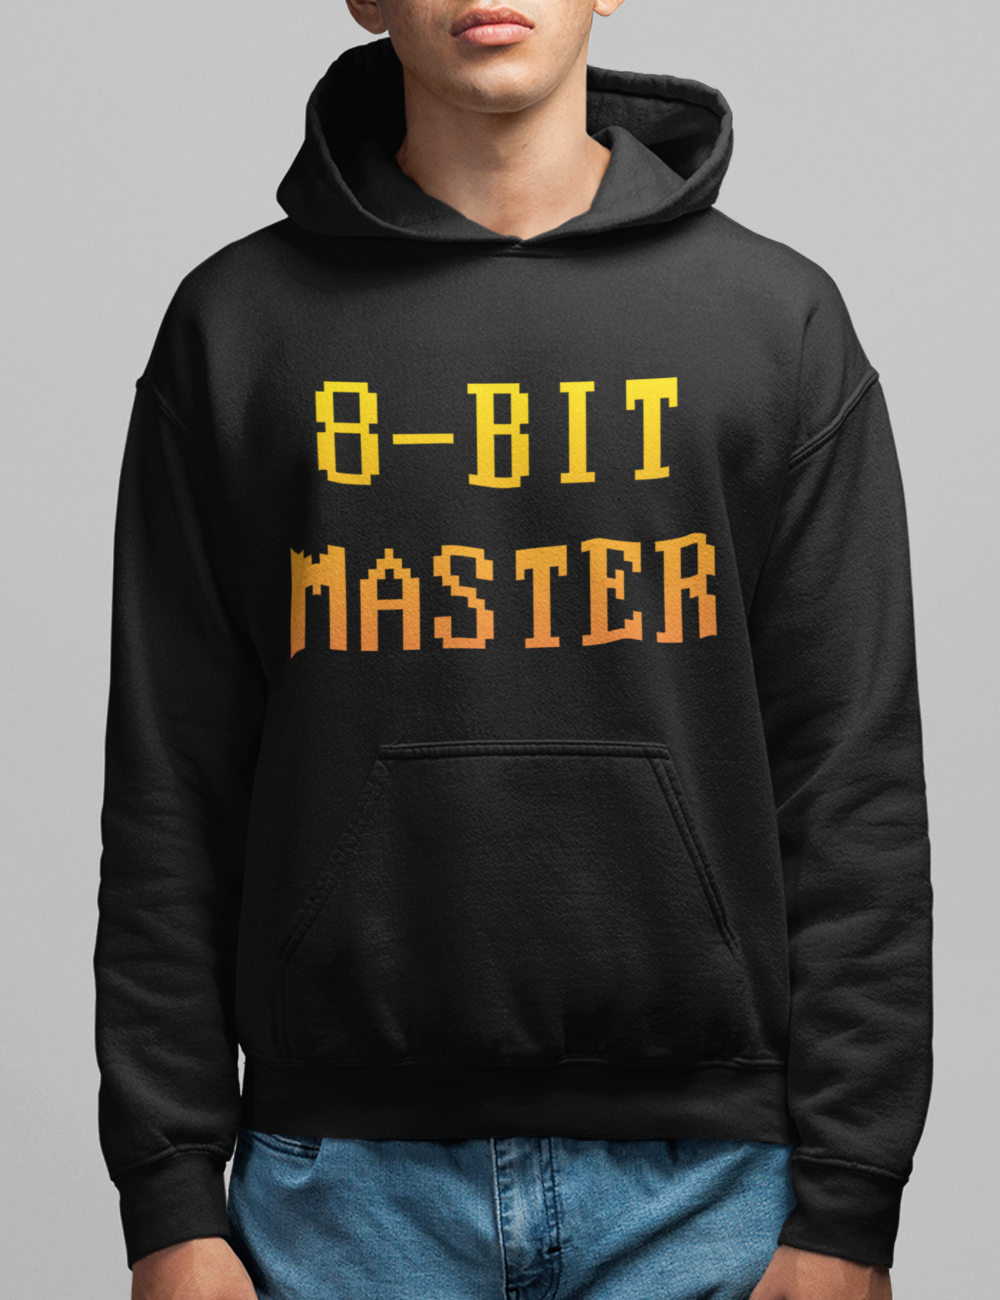 8-Bit Master | Hoodie OniTakai